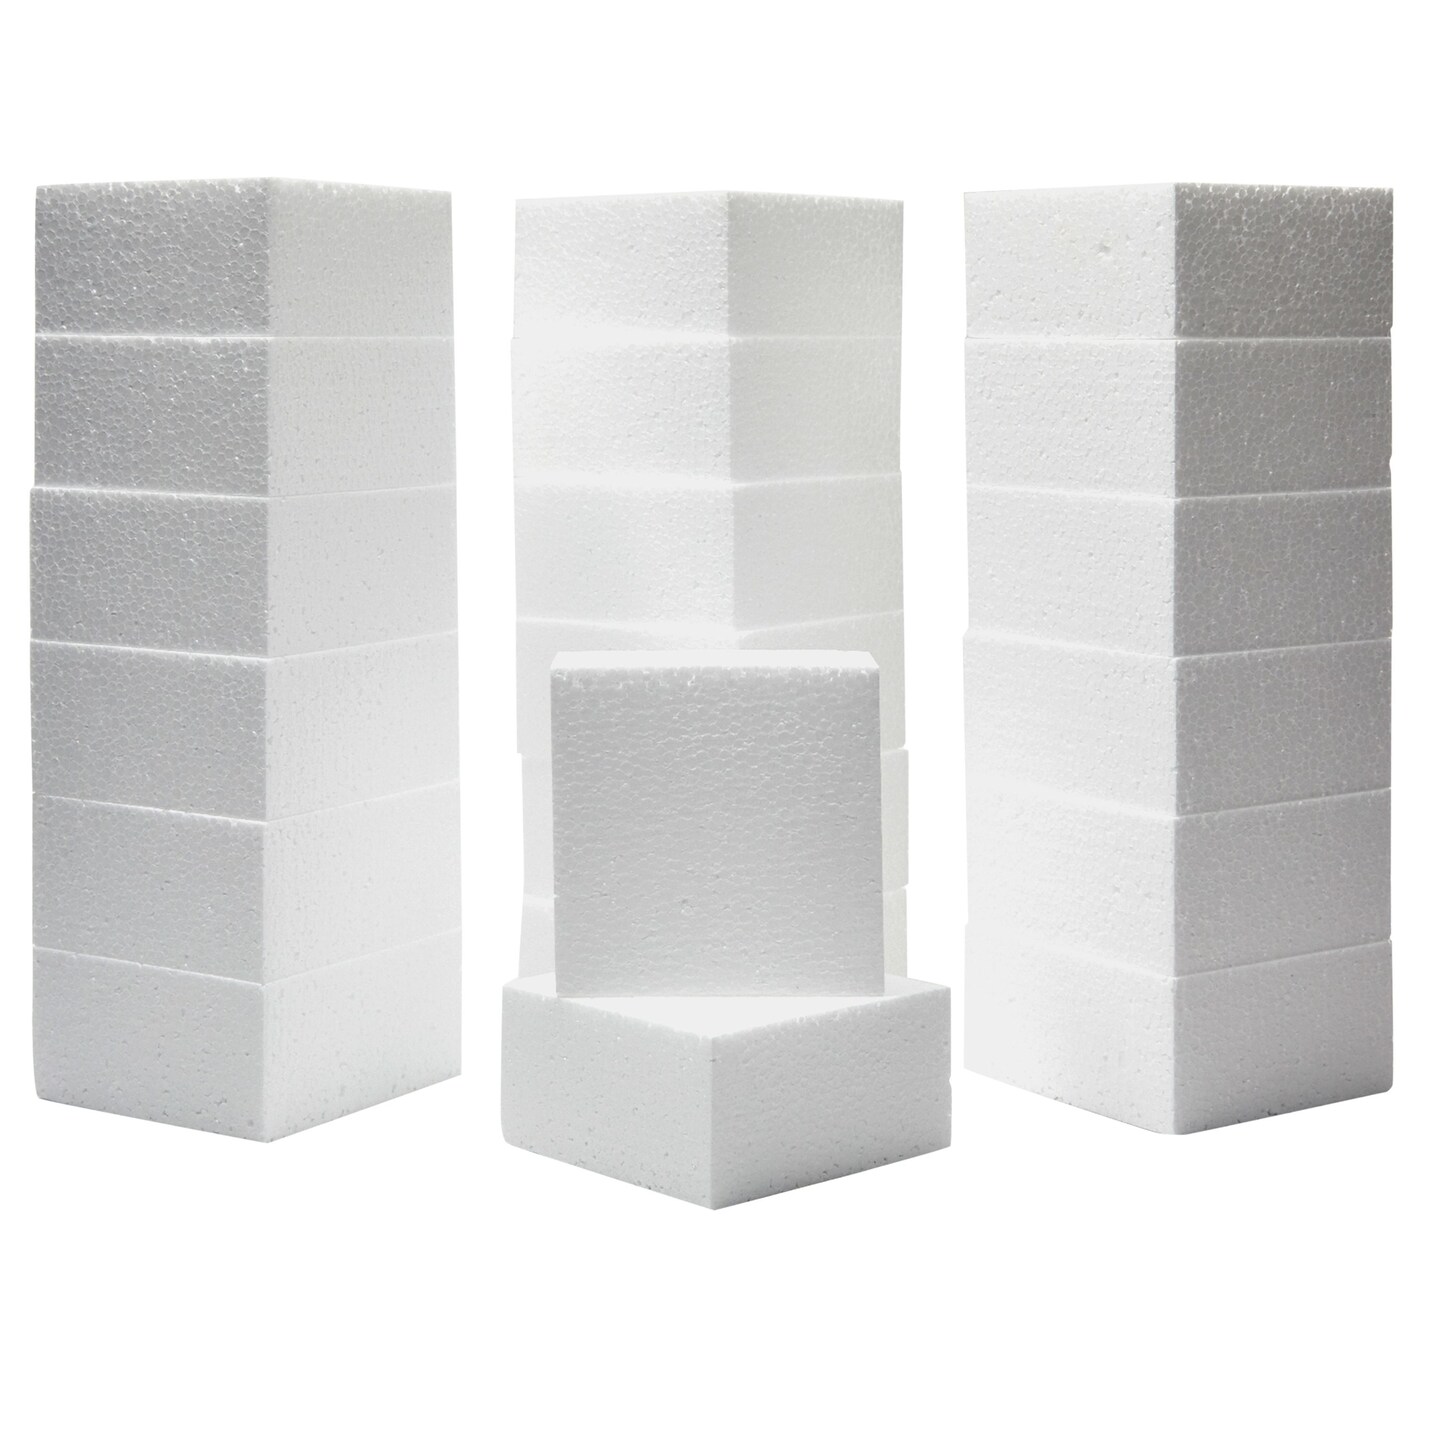 Six Foot Polyisocyanurate Foam Blocks